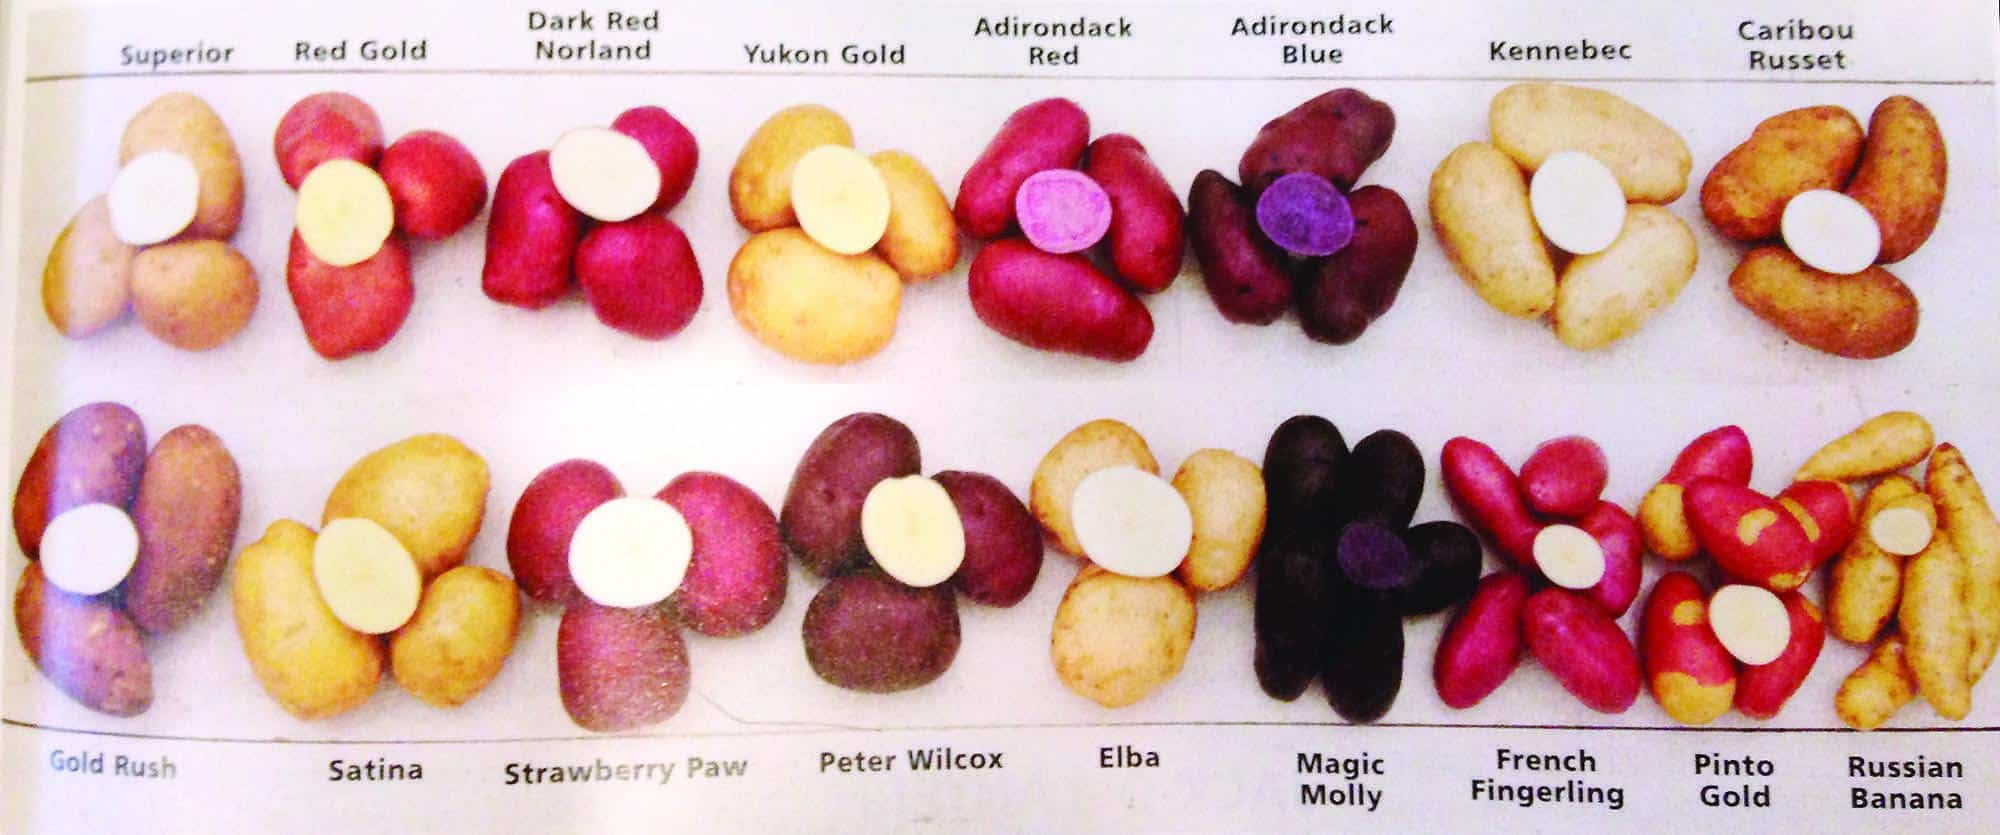 Potato Varieties List